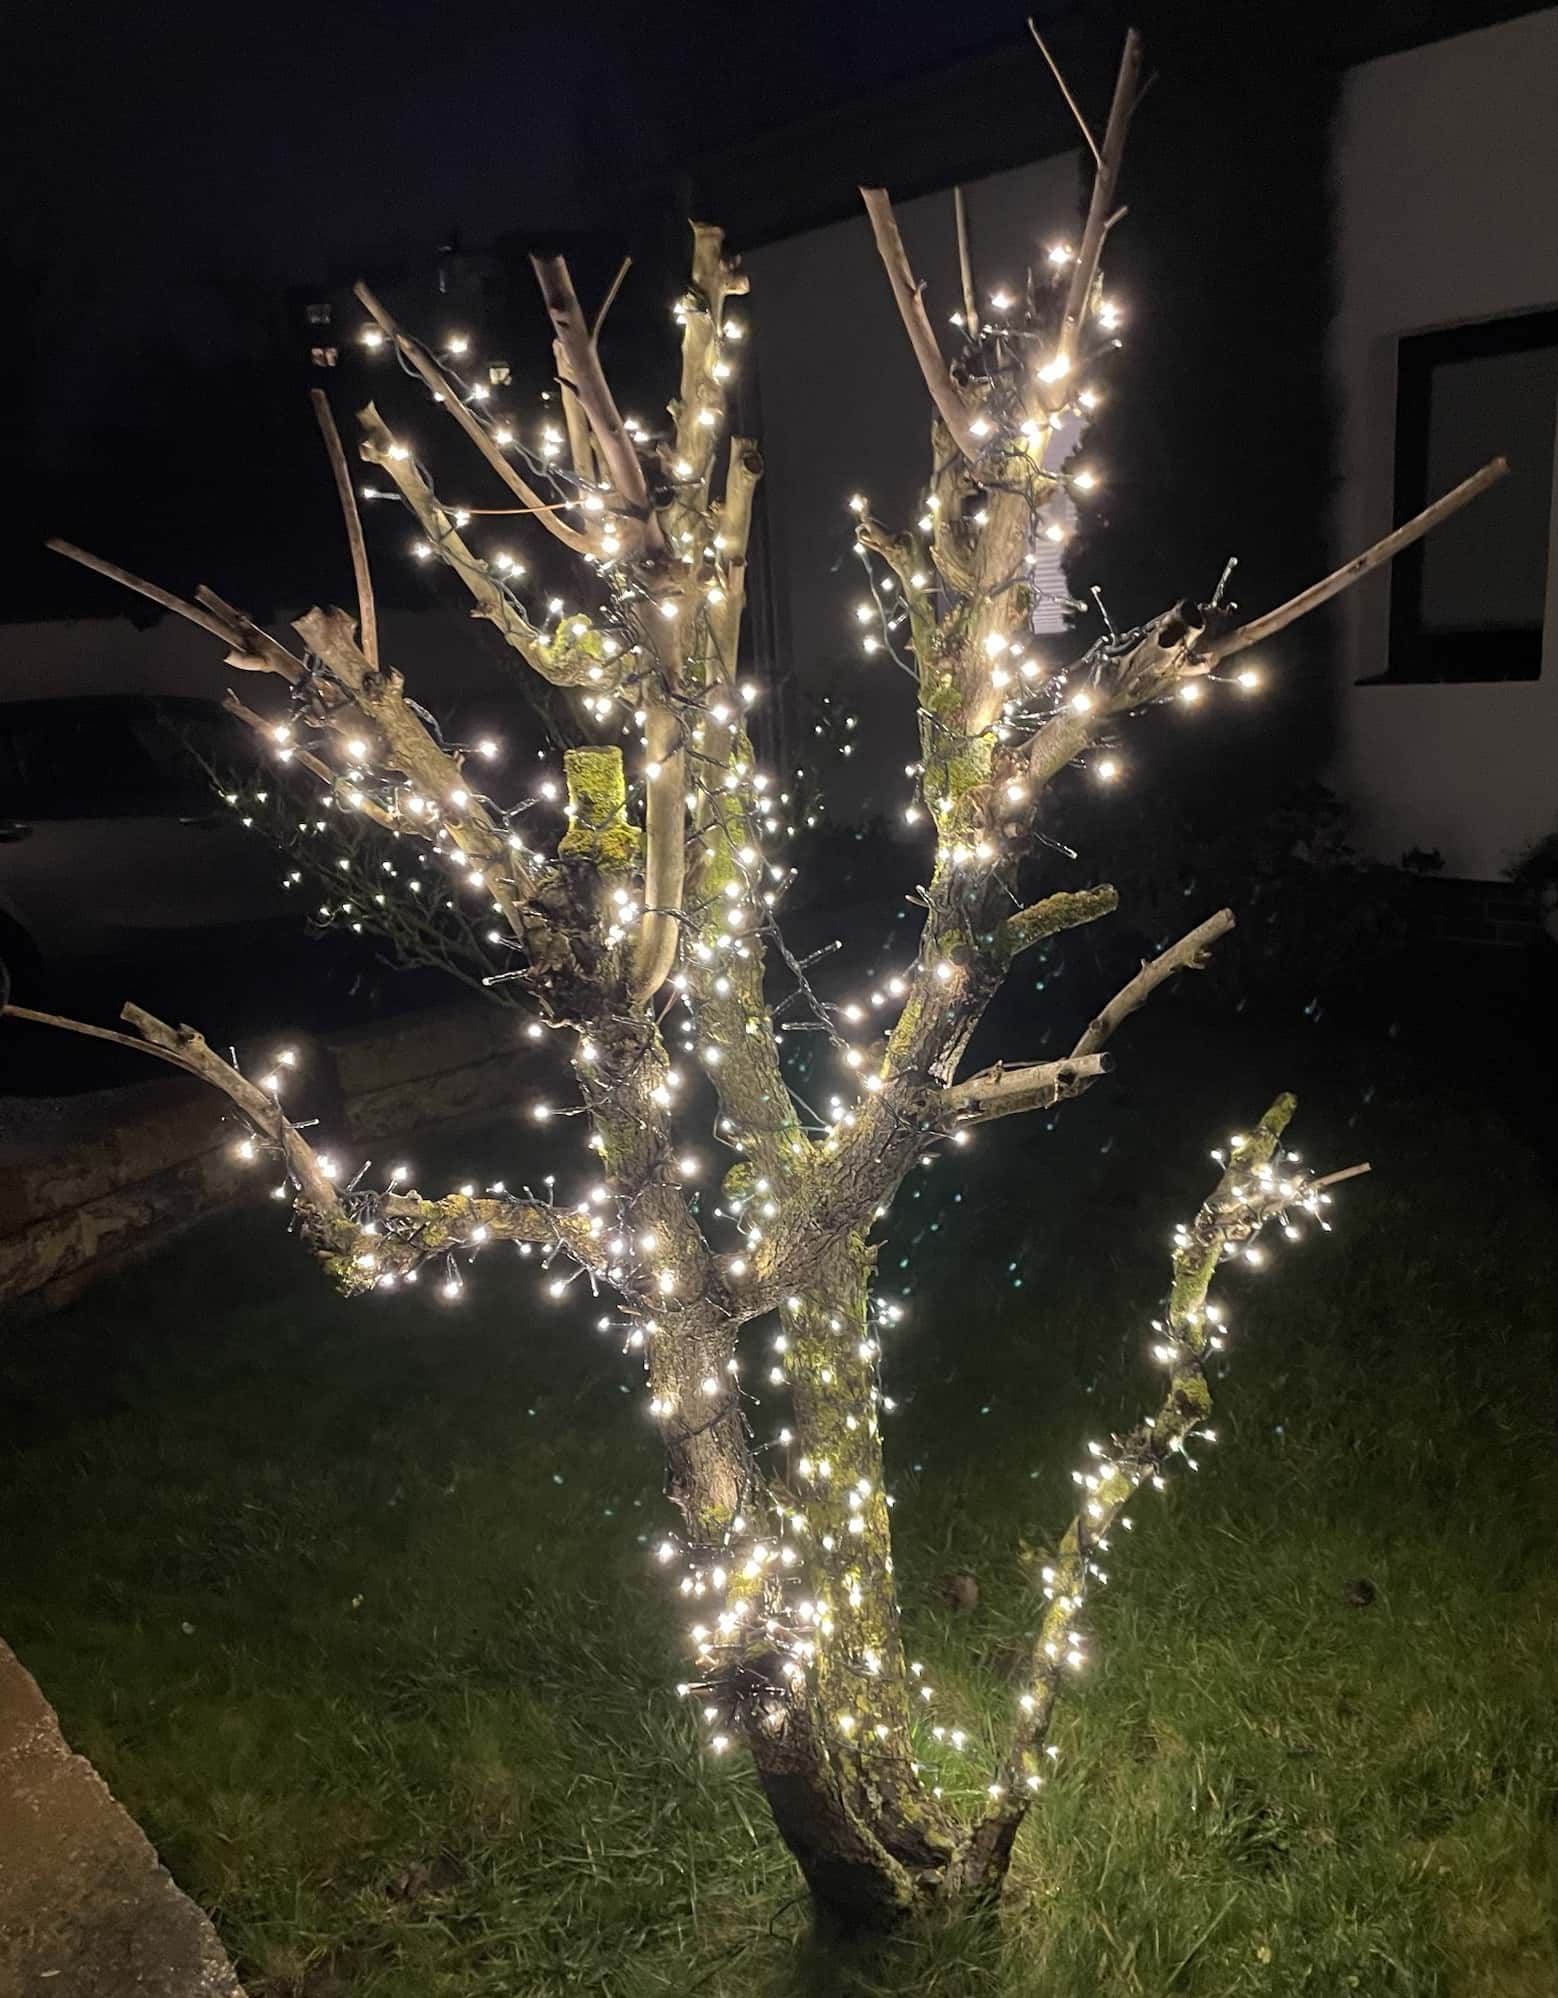 Kleiner Baum mut Weihnachtsbeleuchtung.